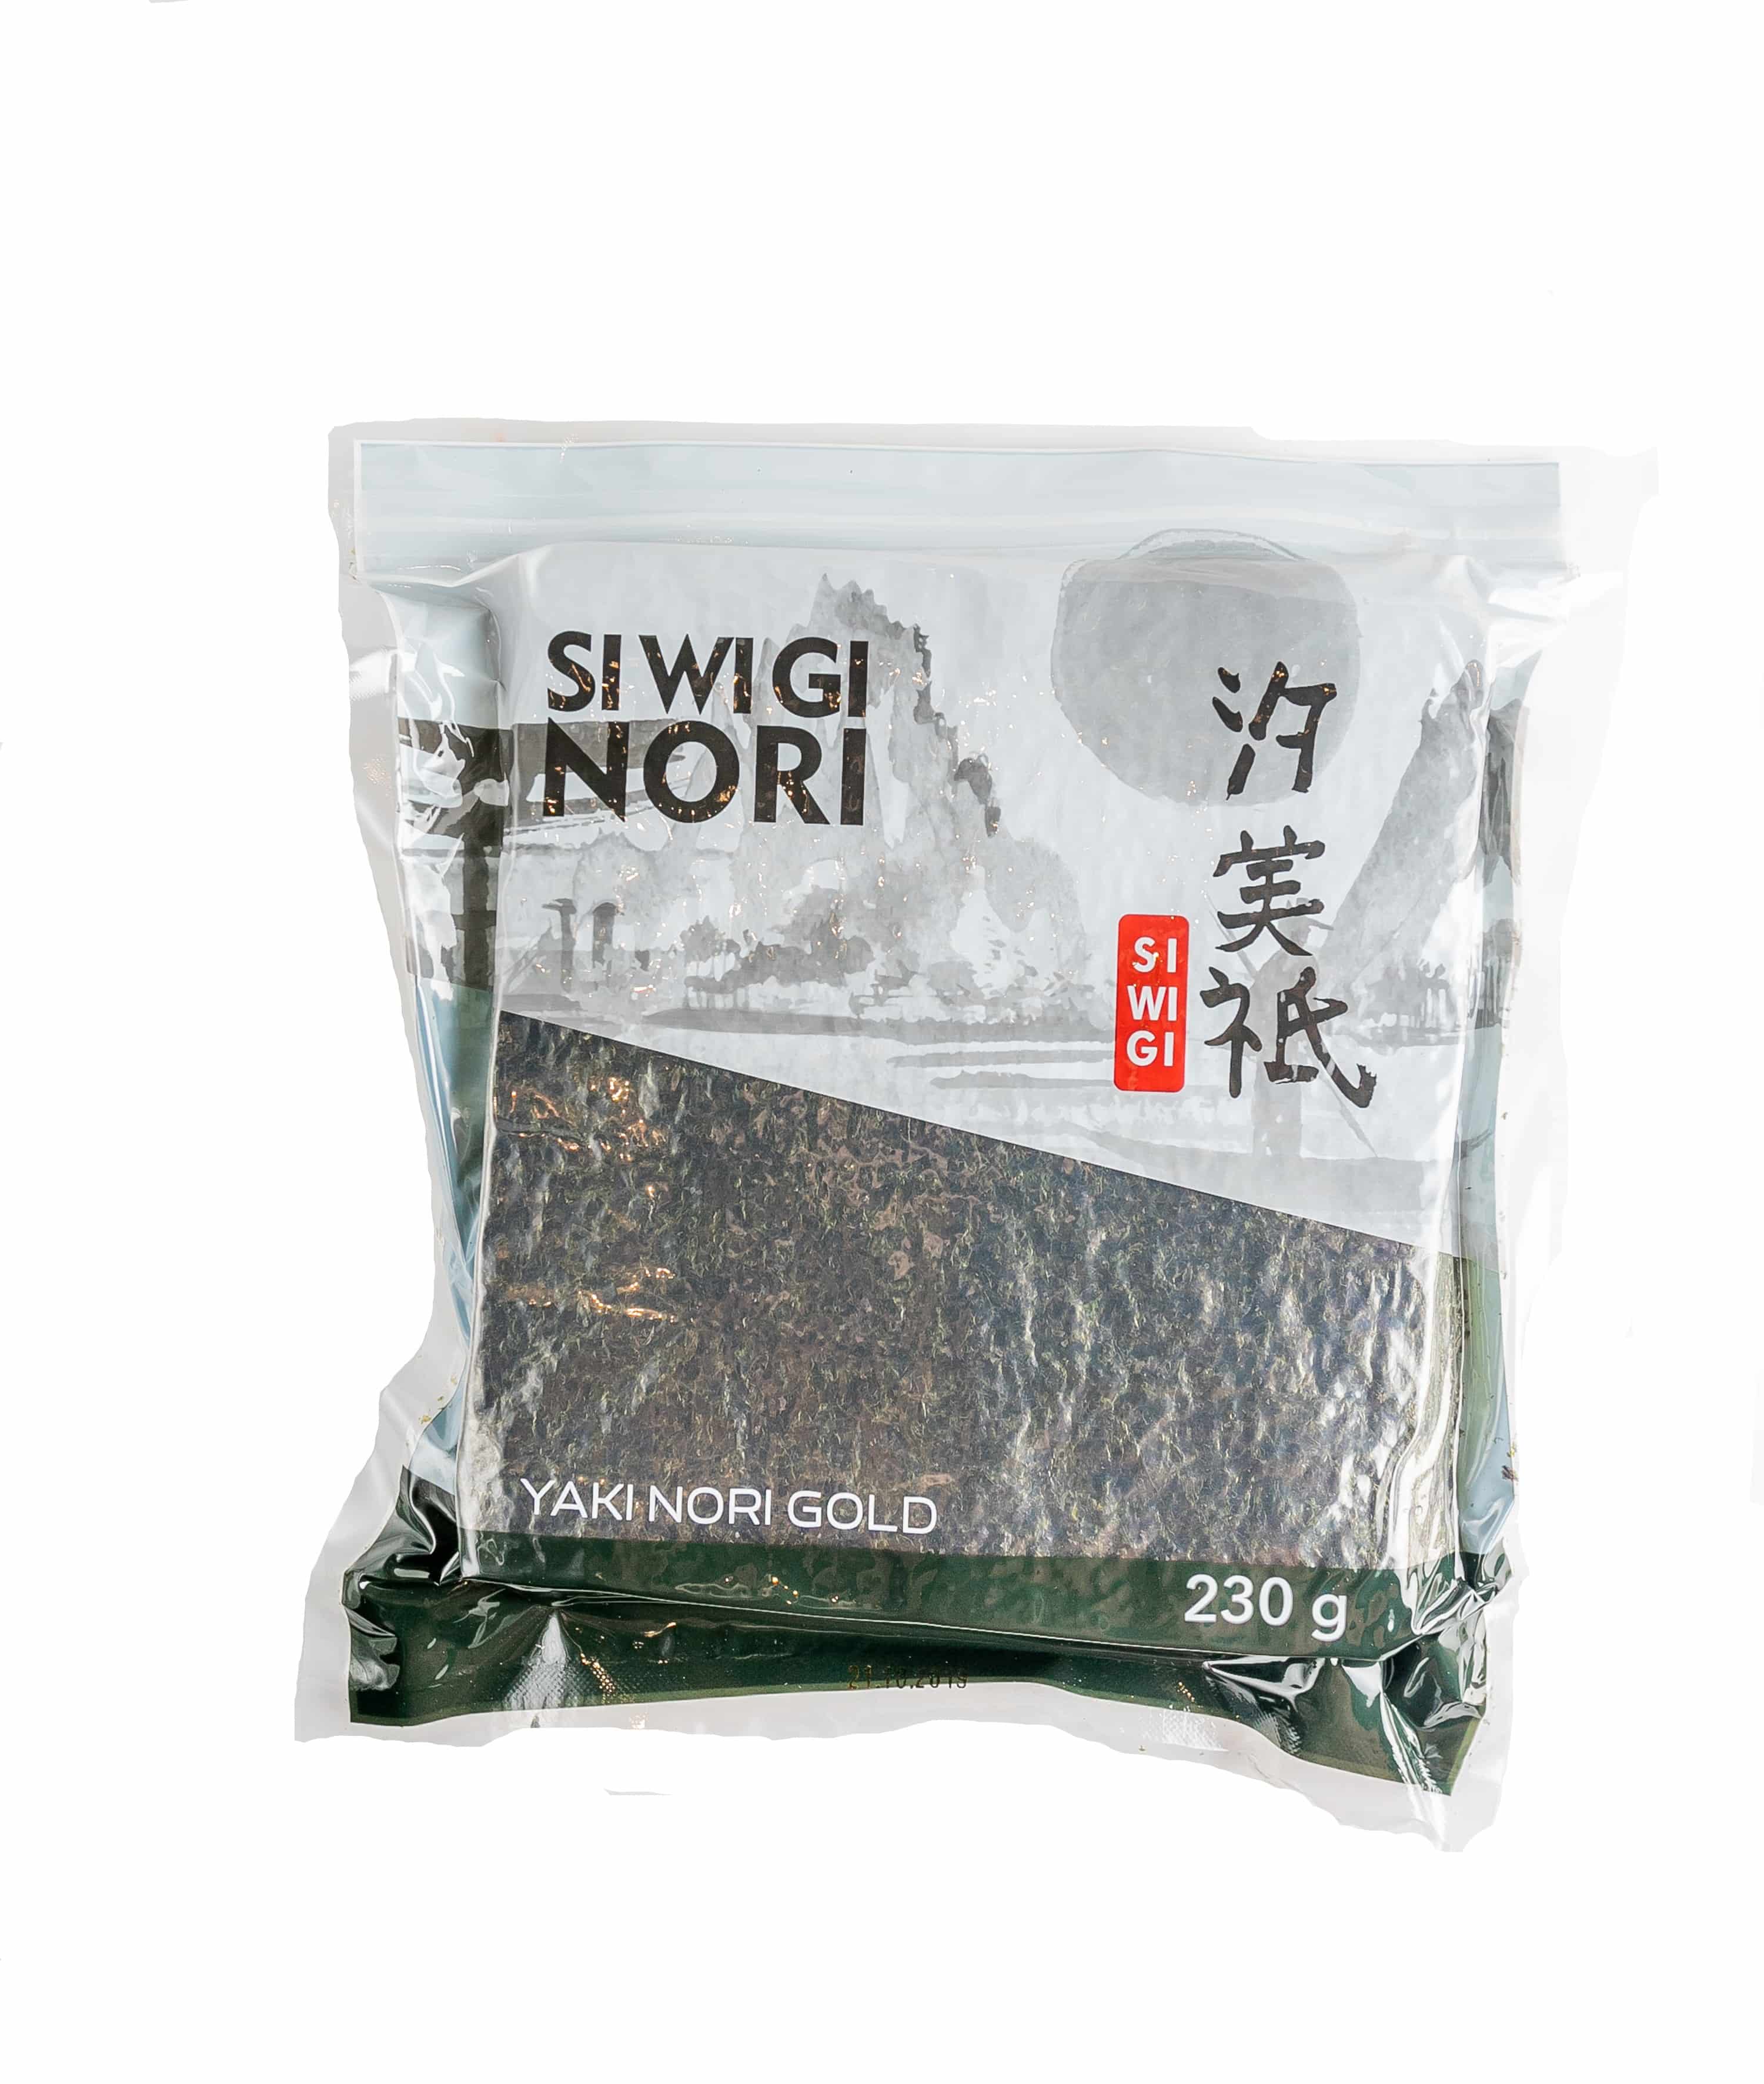 Nori Siwigi is an algae essential for sushi and roll preparation.